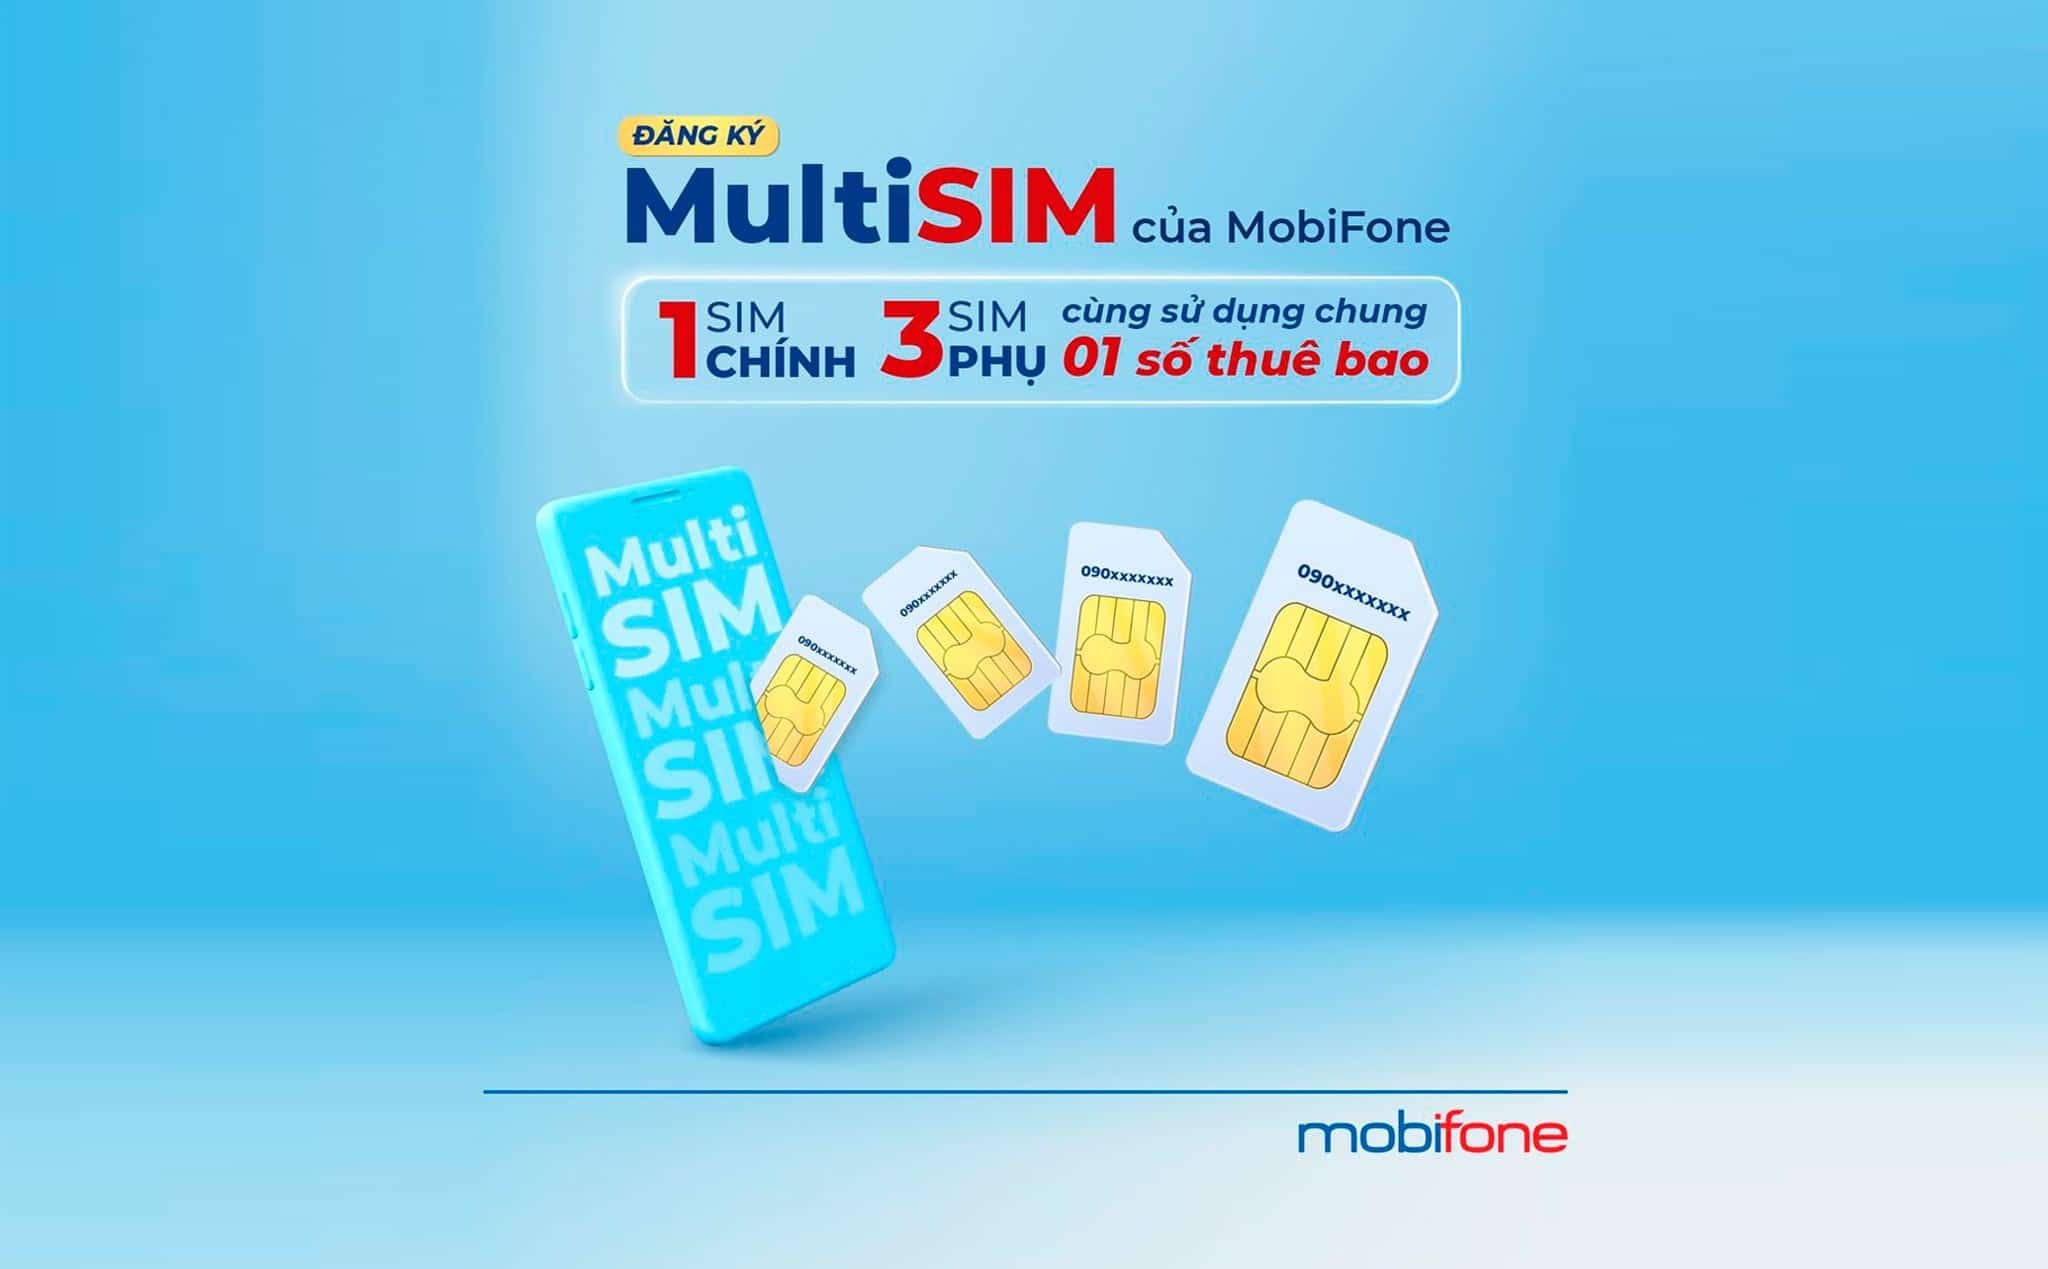 Hướng dẫn đăng ký MultiSIM MobiFone sử dụng 1 số cho nhiều điện thoại